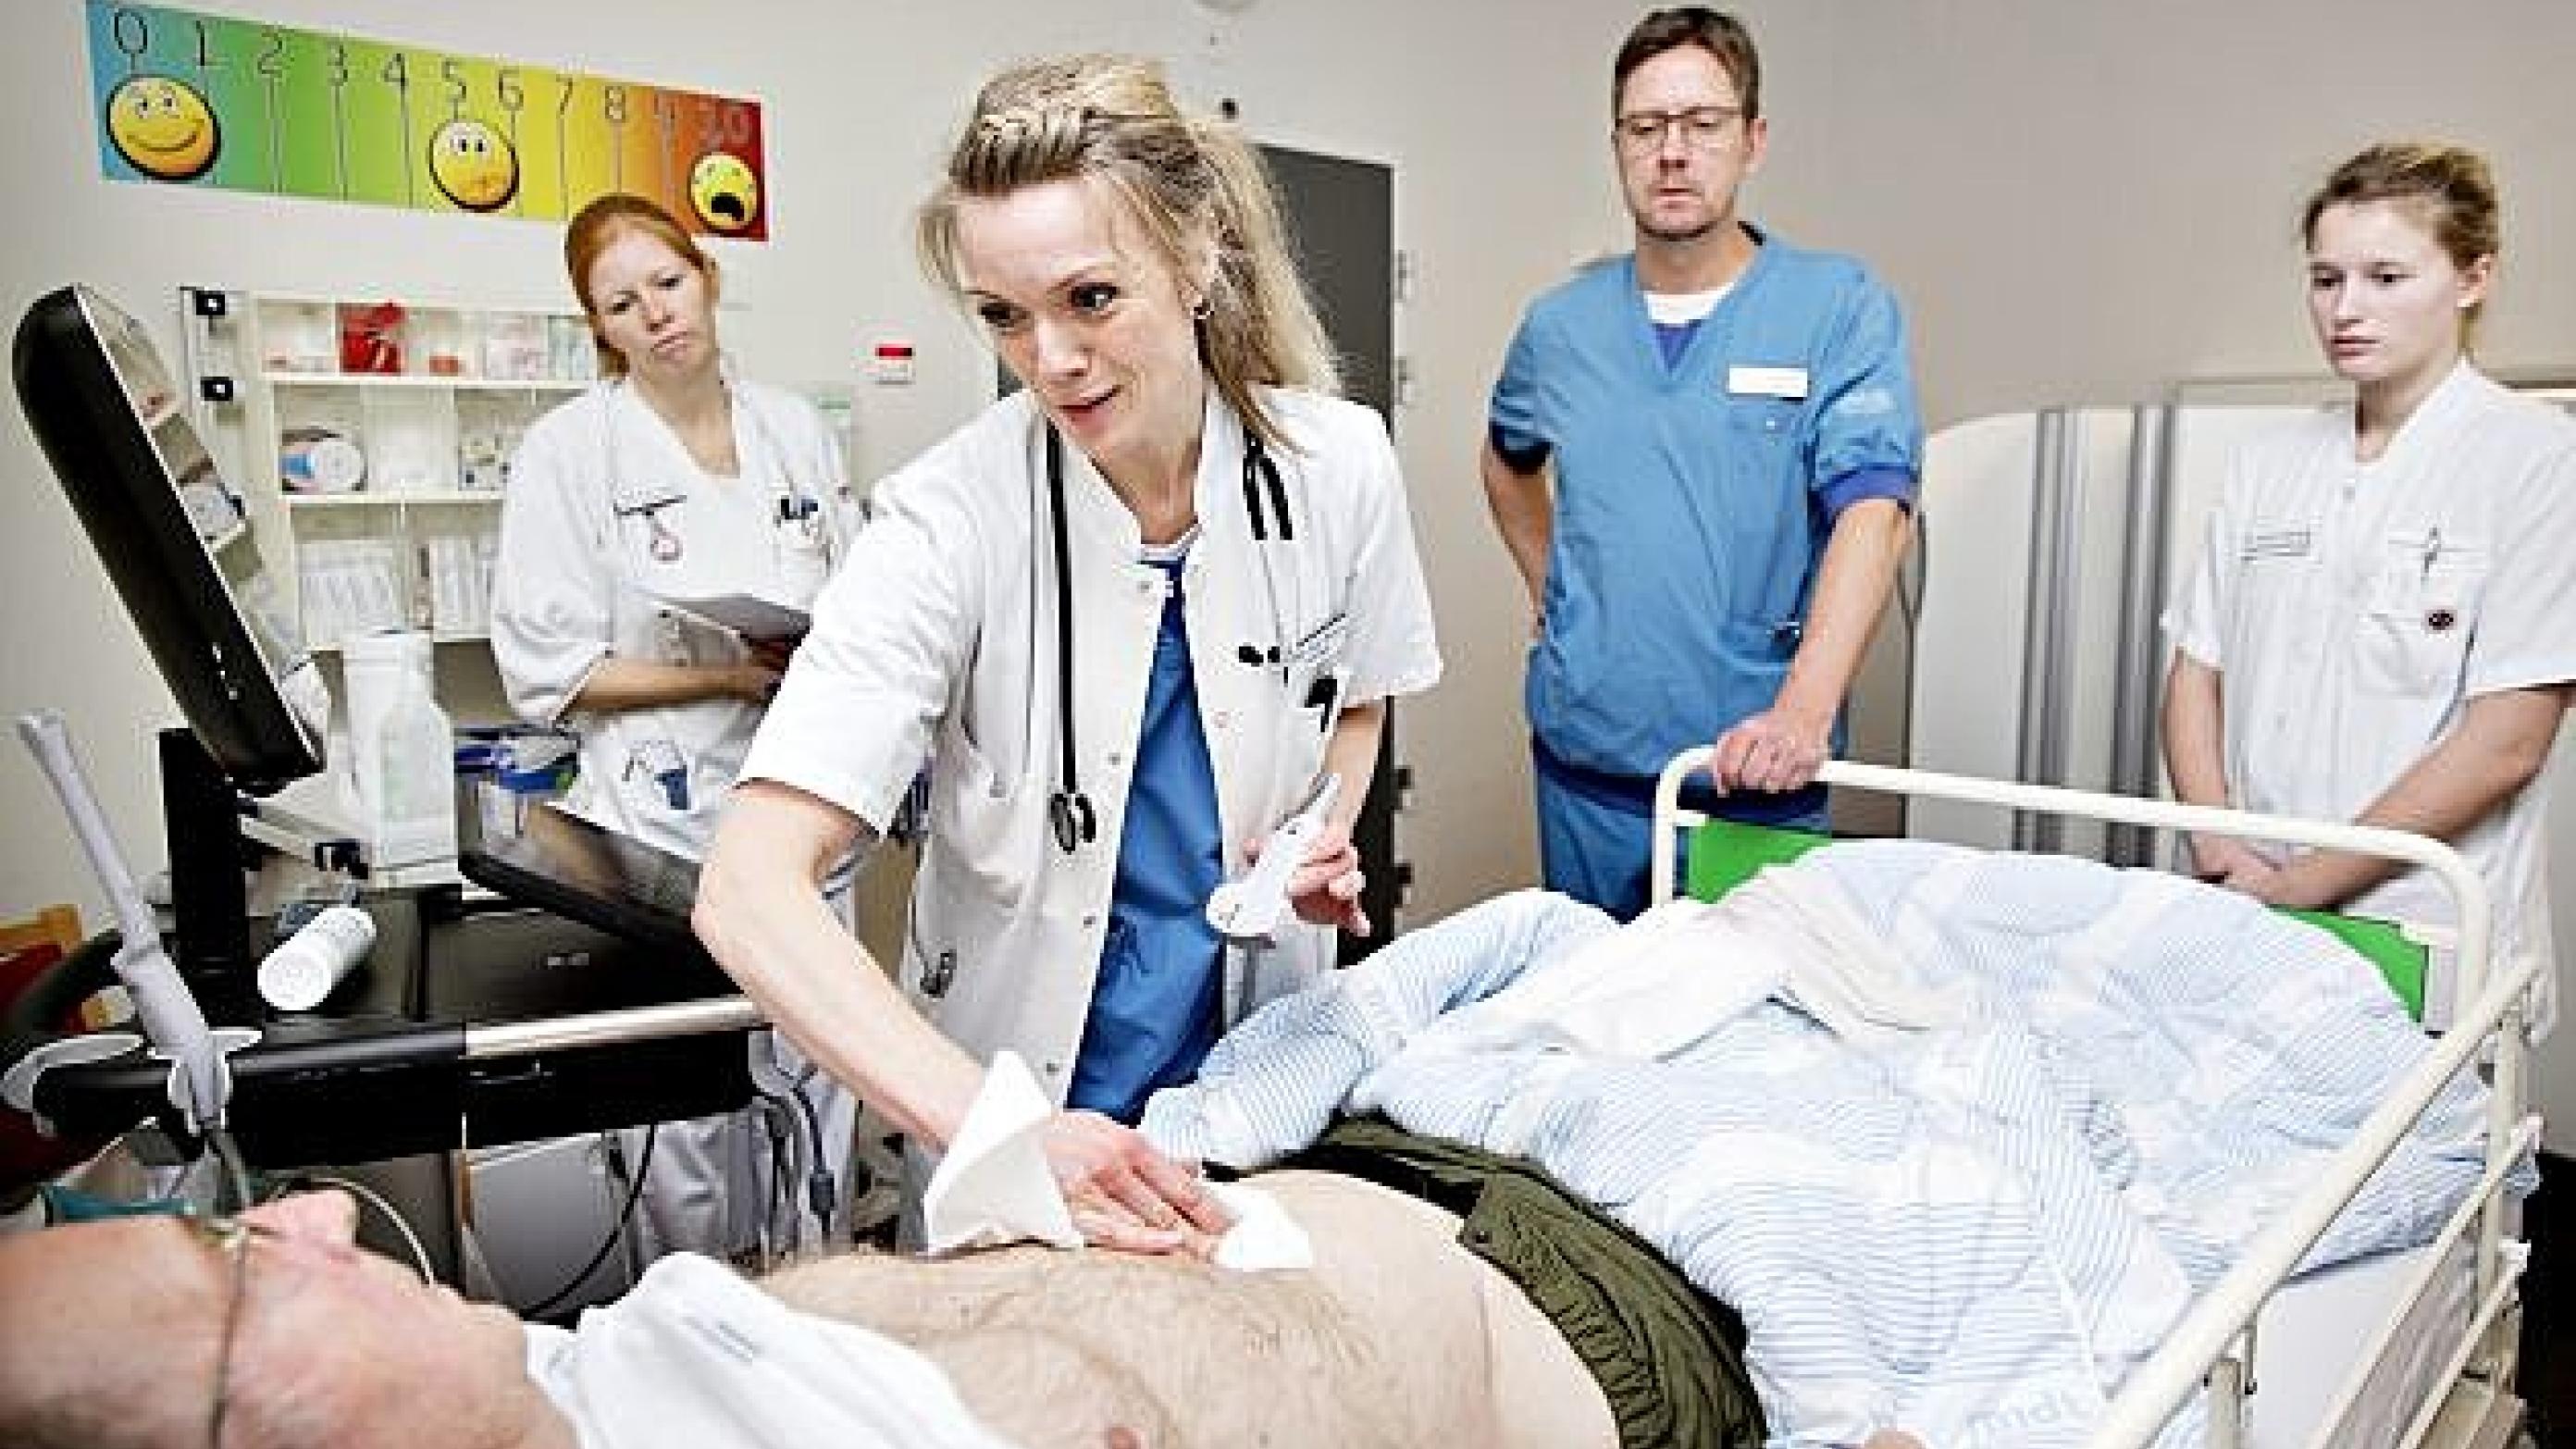 Overlæge Mille B. Morberg undersøger en patient. Ledende overlæge Larry Kristiansen og to sygeplejersker ser på. Foto: Astrid Dalum